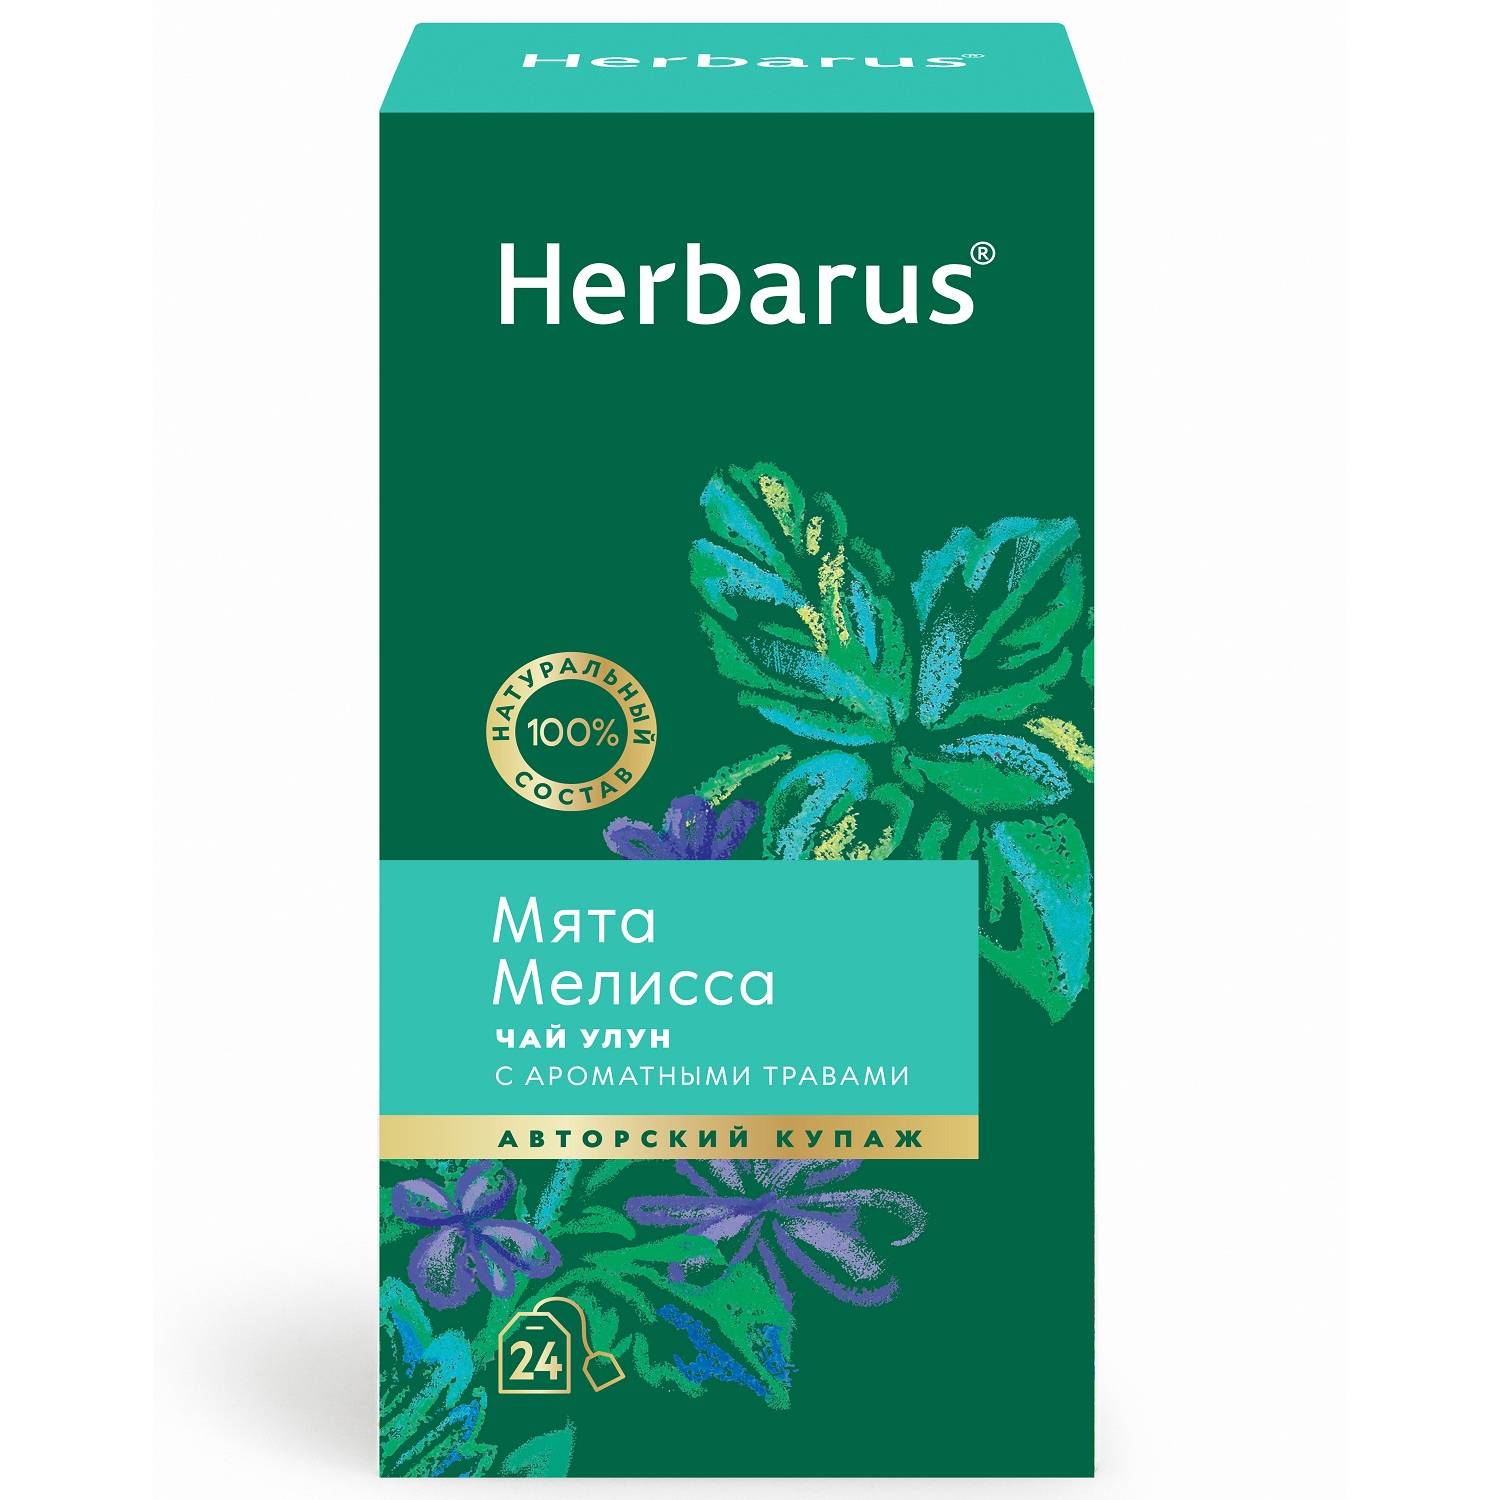 Herbarus Чай улун с ароматными травами Мята и мелисса, 24 пакетика х 2 г (Herbarus, Чай с добавками)